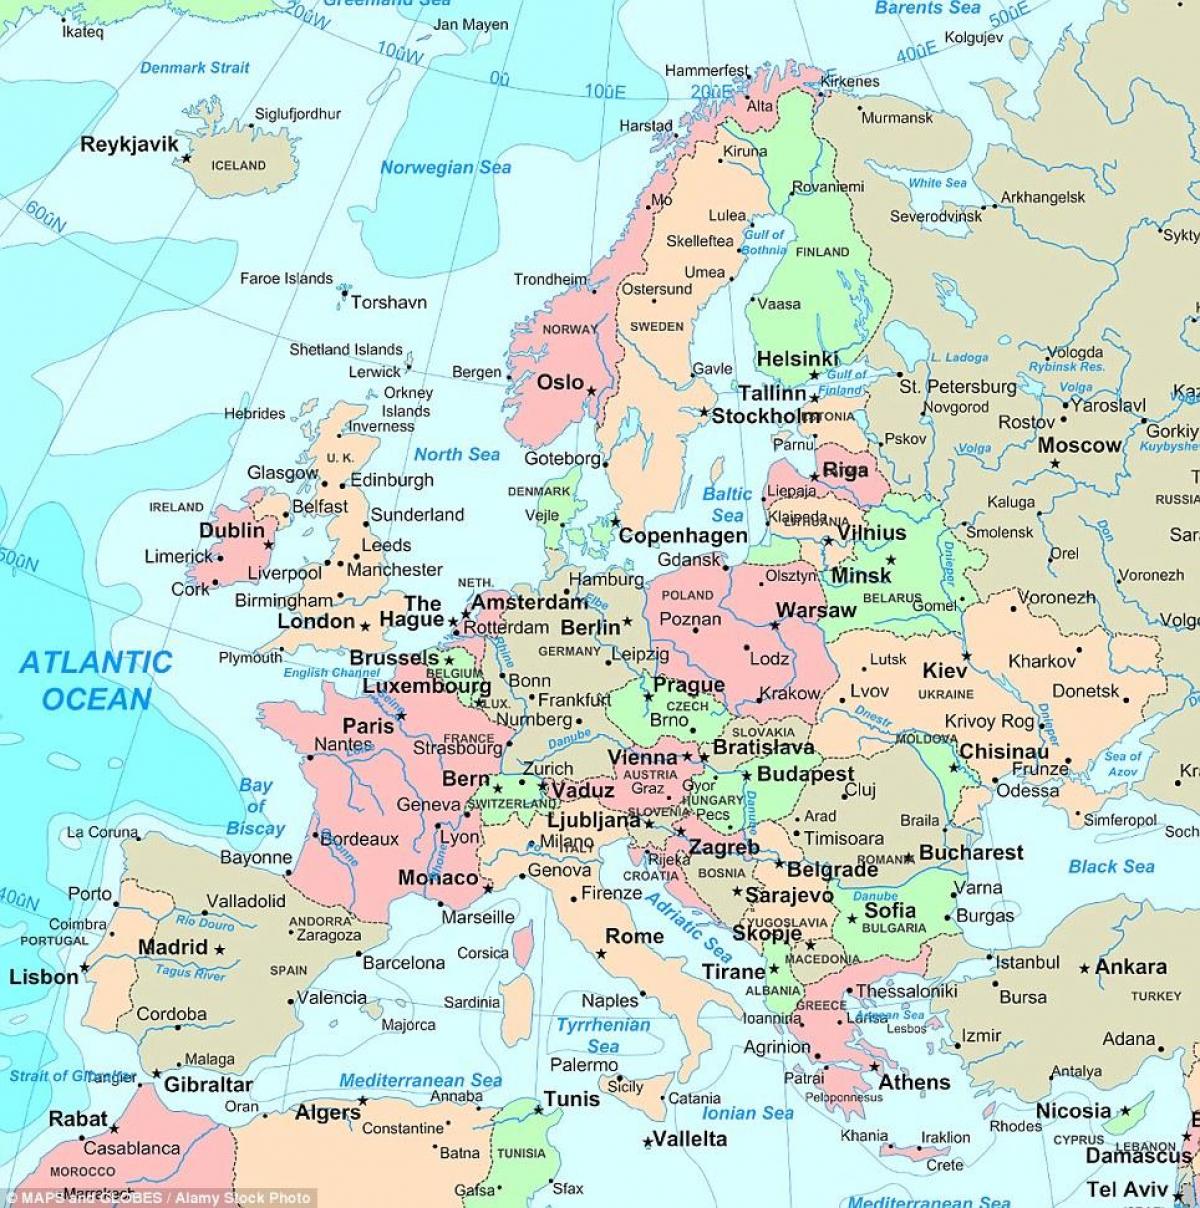 STORBRITANNIA europa kart - Kart over Storbritannia og europa (Northern